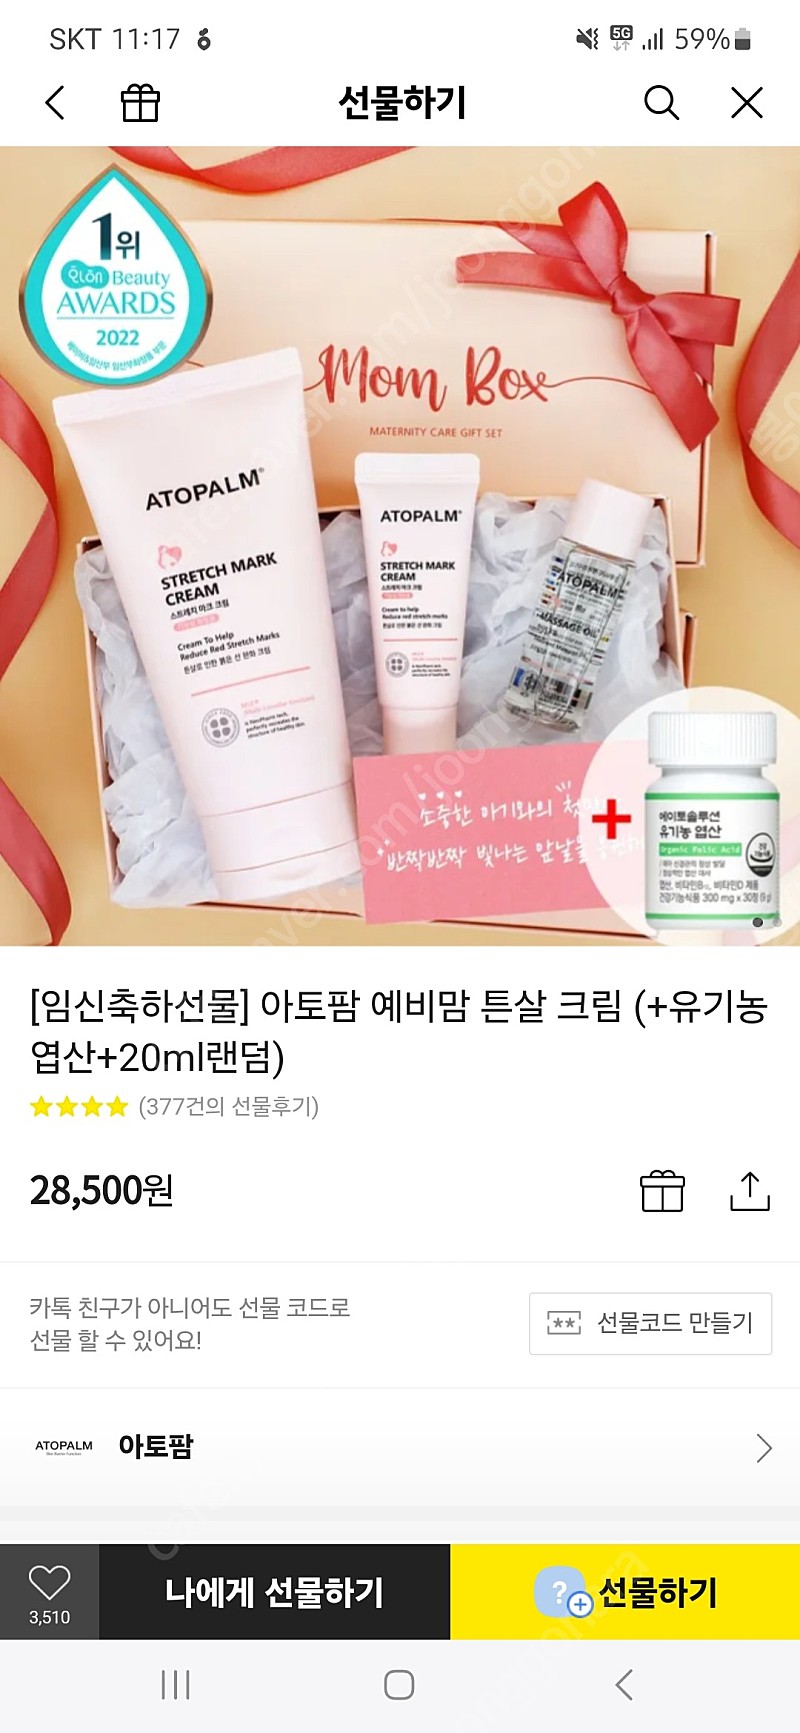 아토팜 튼살크림 선물세트 구성 새상품